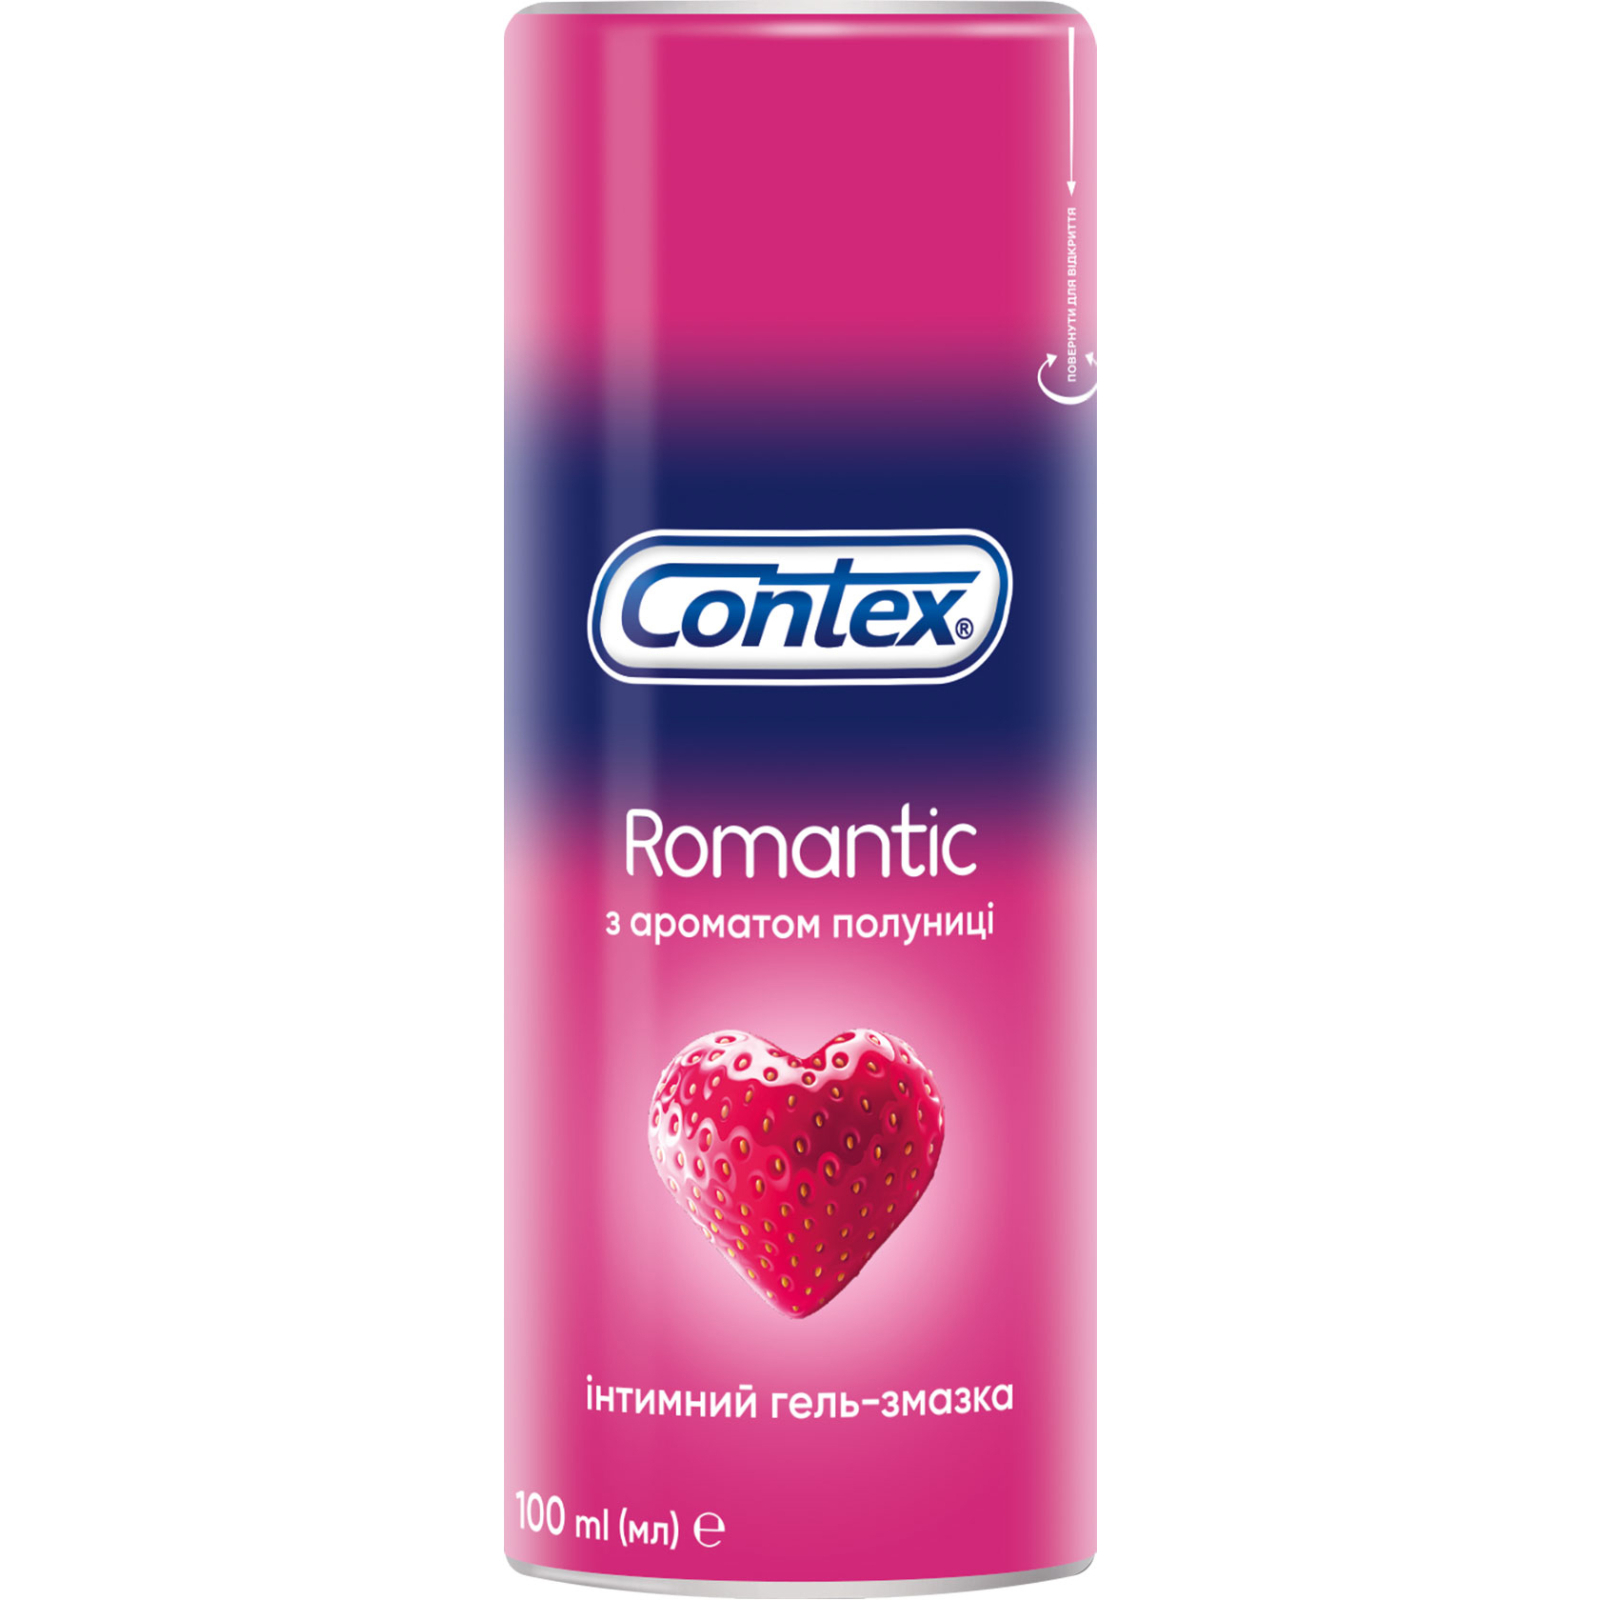 Інтимний гель-змазка Contex Romantic з ароматом полуниці (лубрикант) 30 мл (4820108005150)